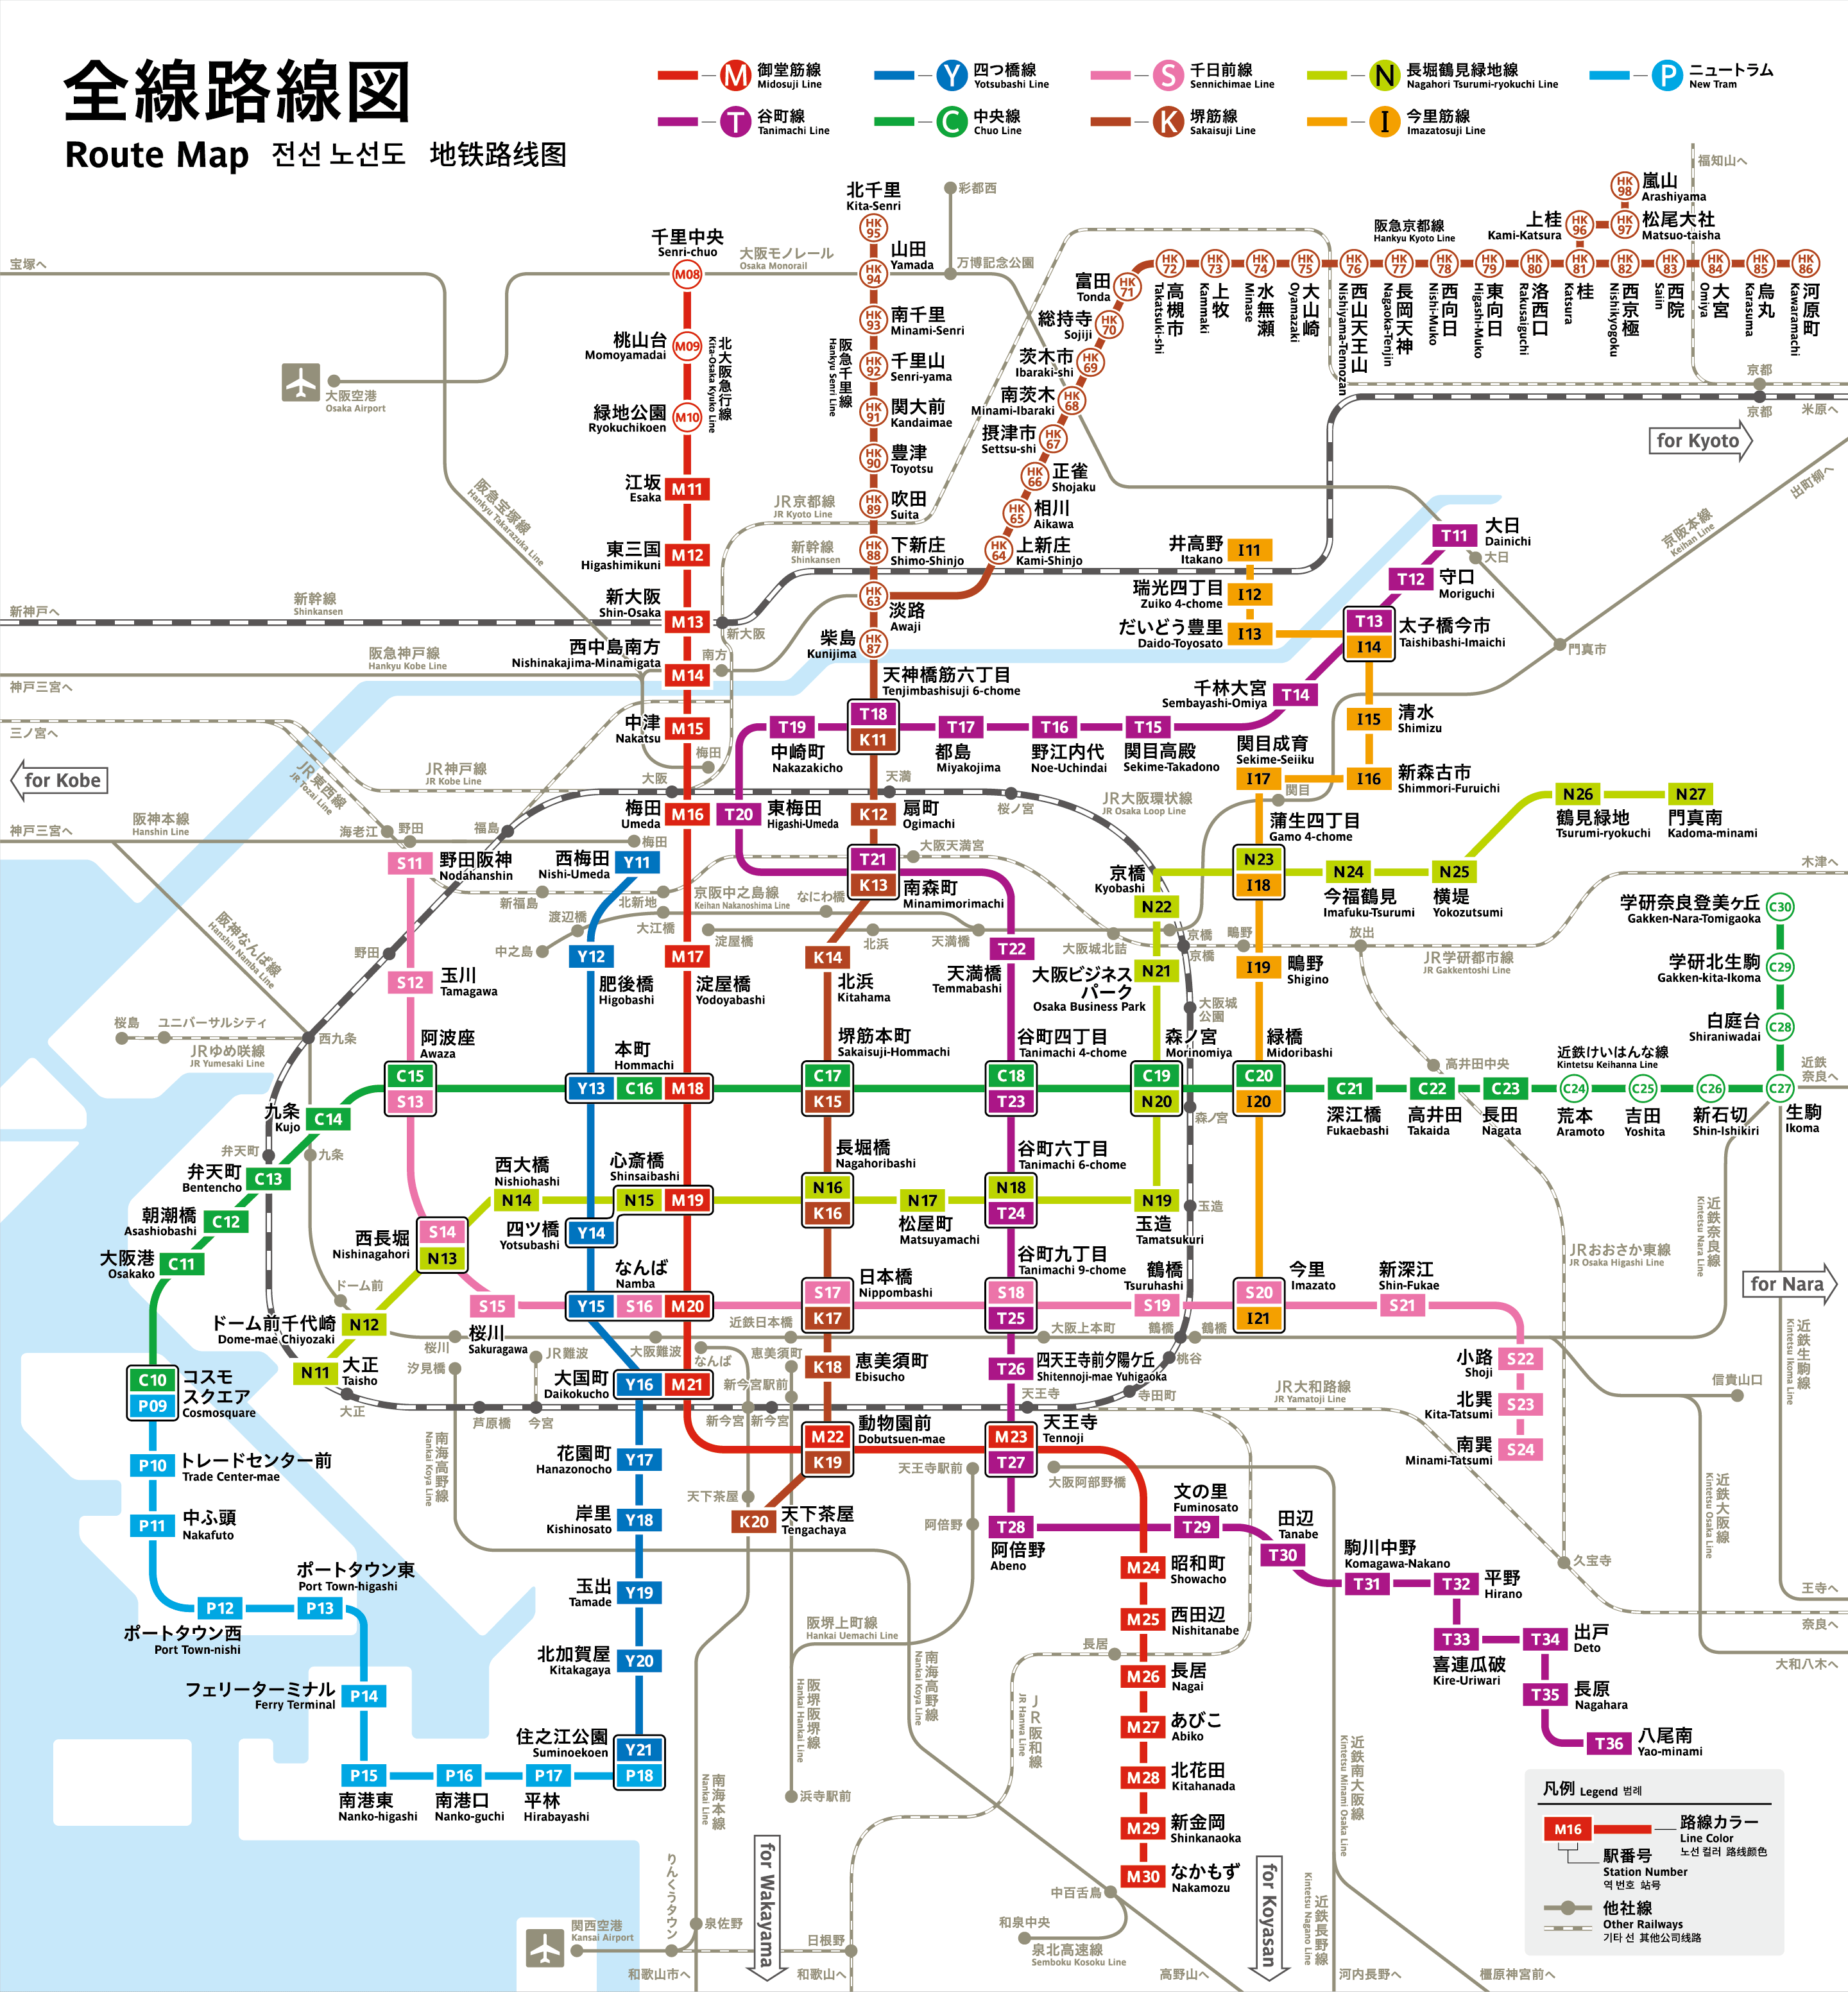 大阪地下鉄・シティバス「年末年始おでかけキャンペーン」乗り放題